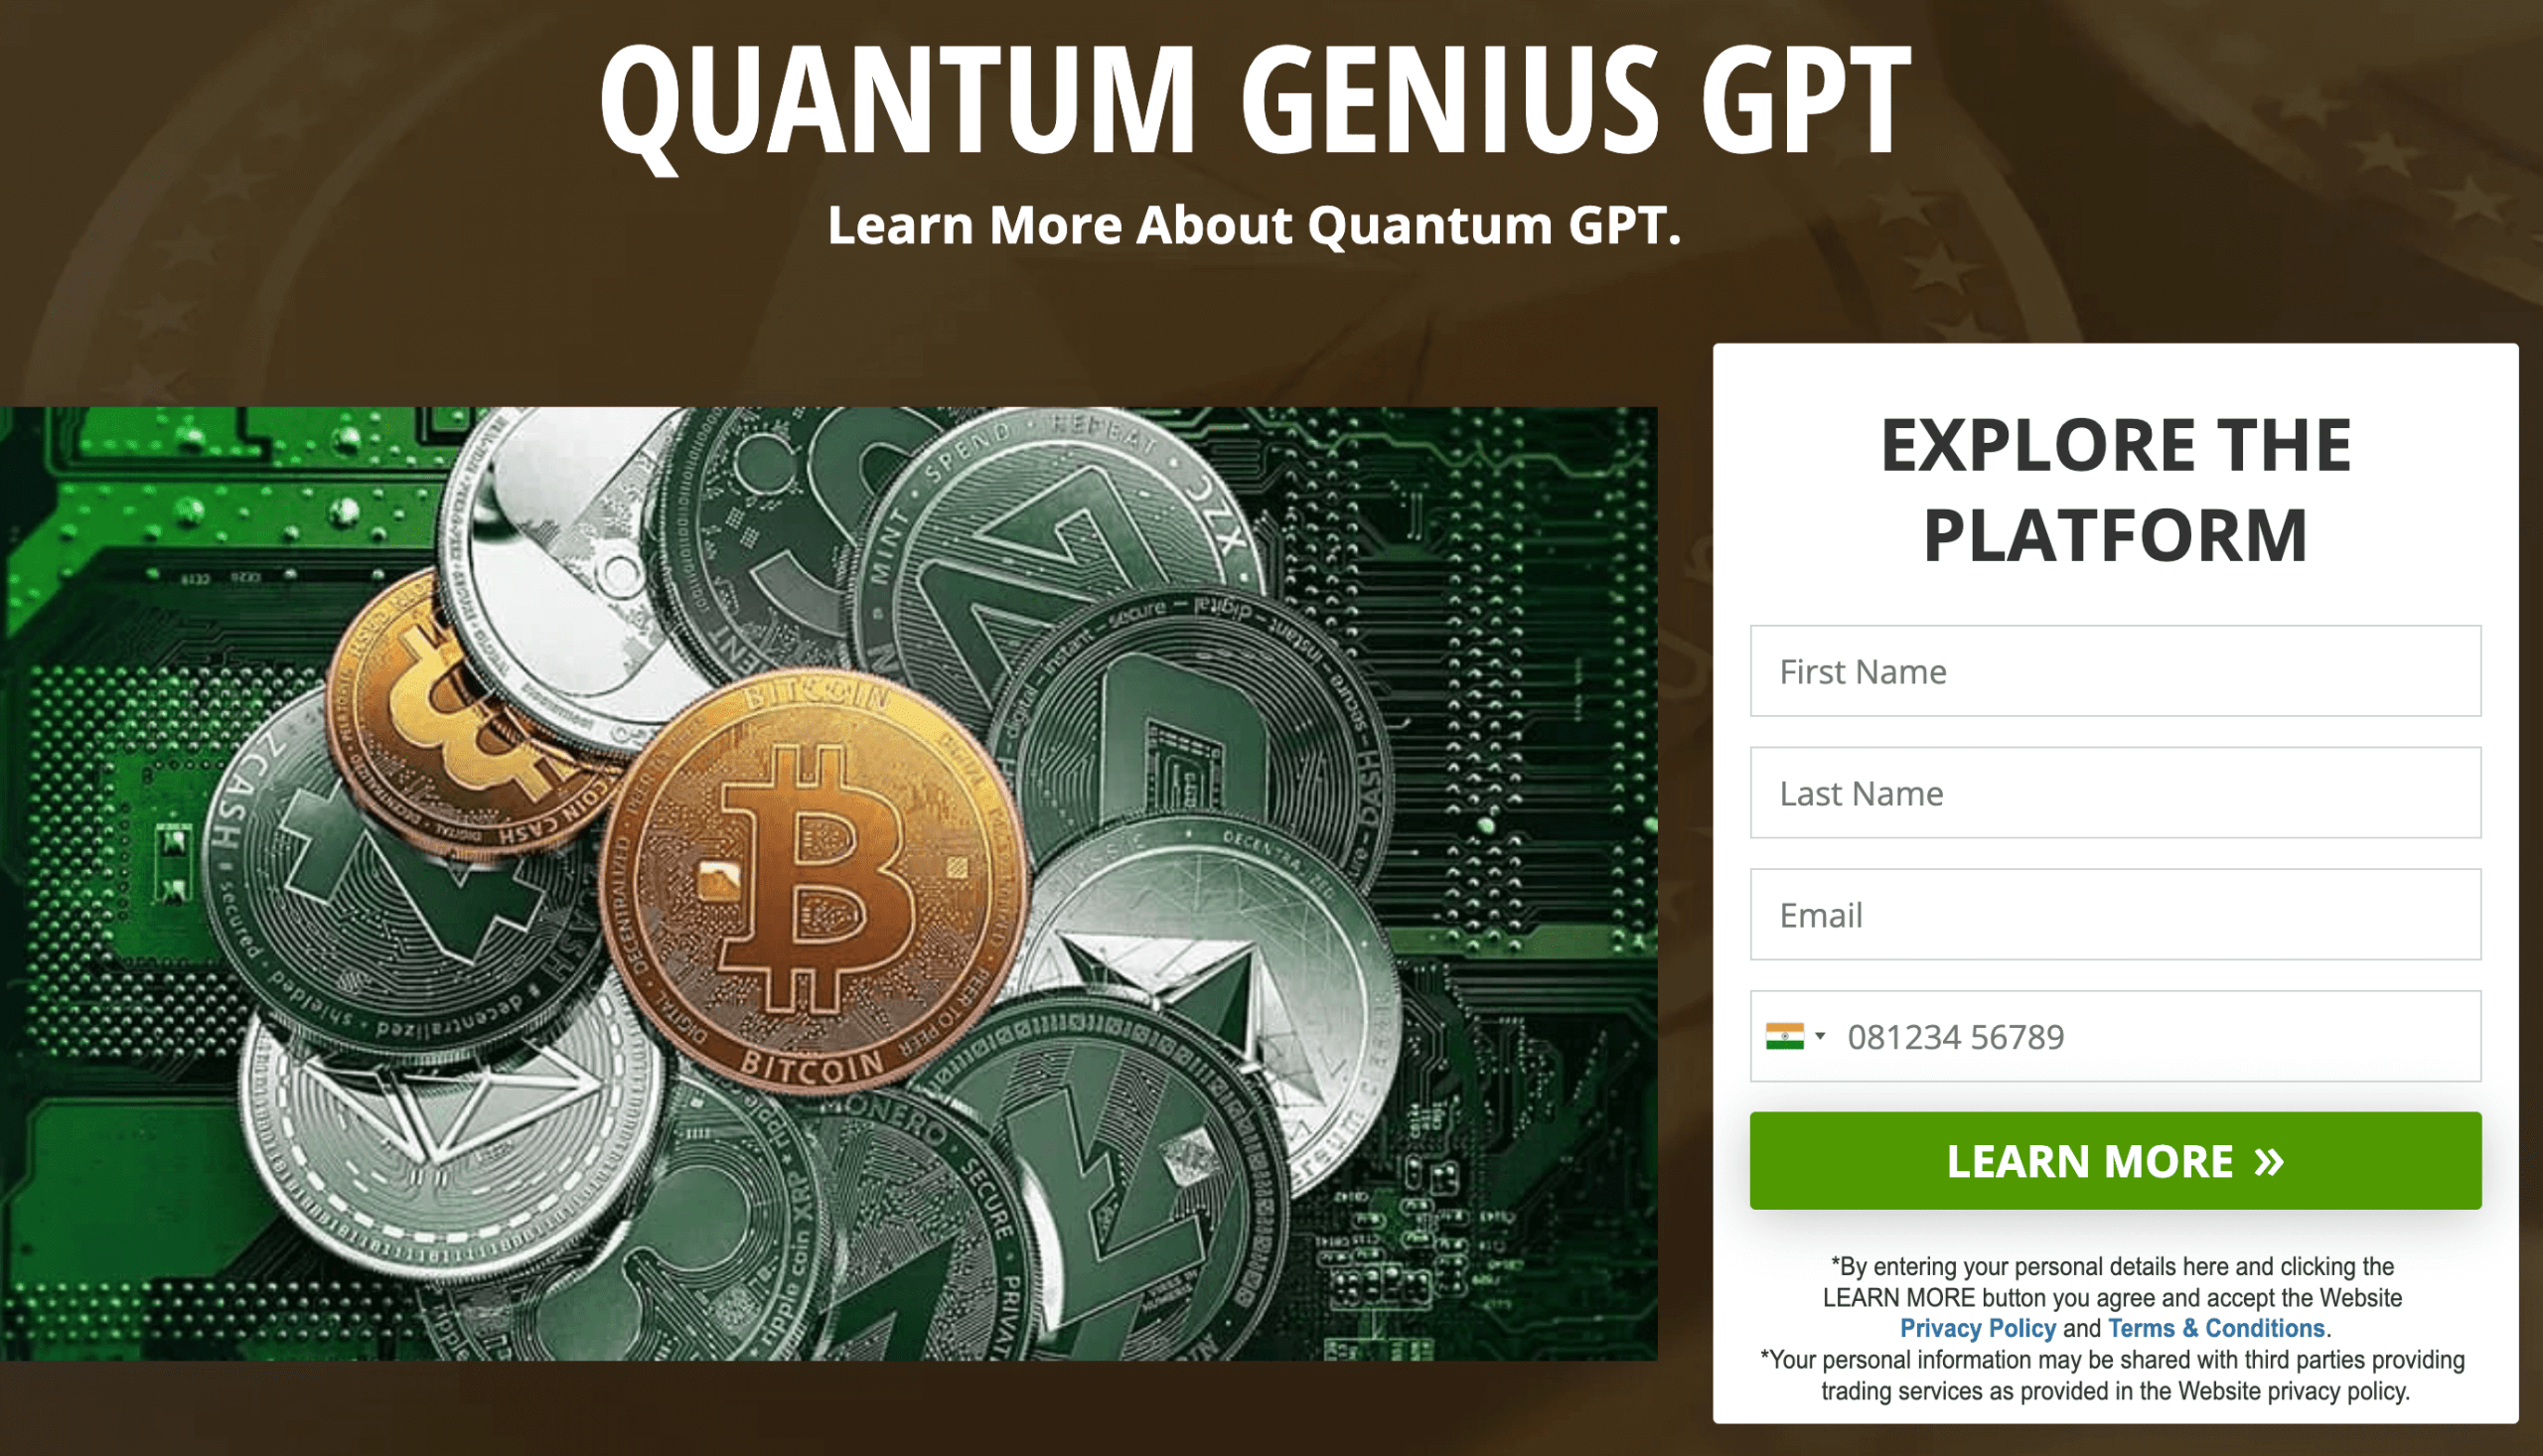 quantum genius gpt